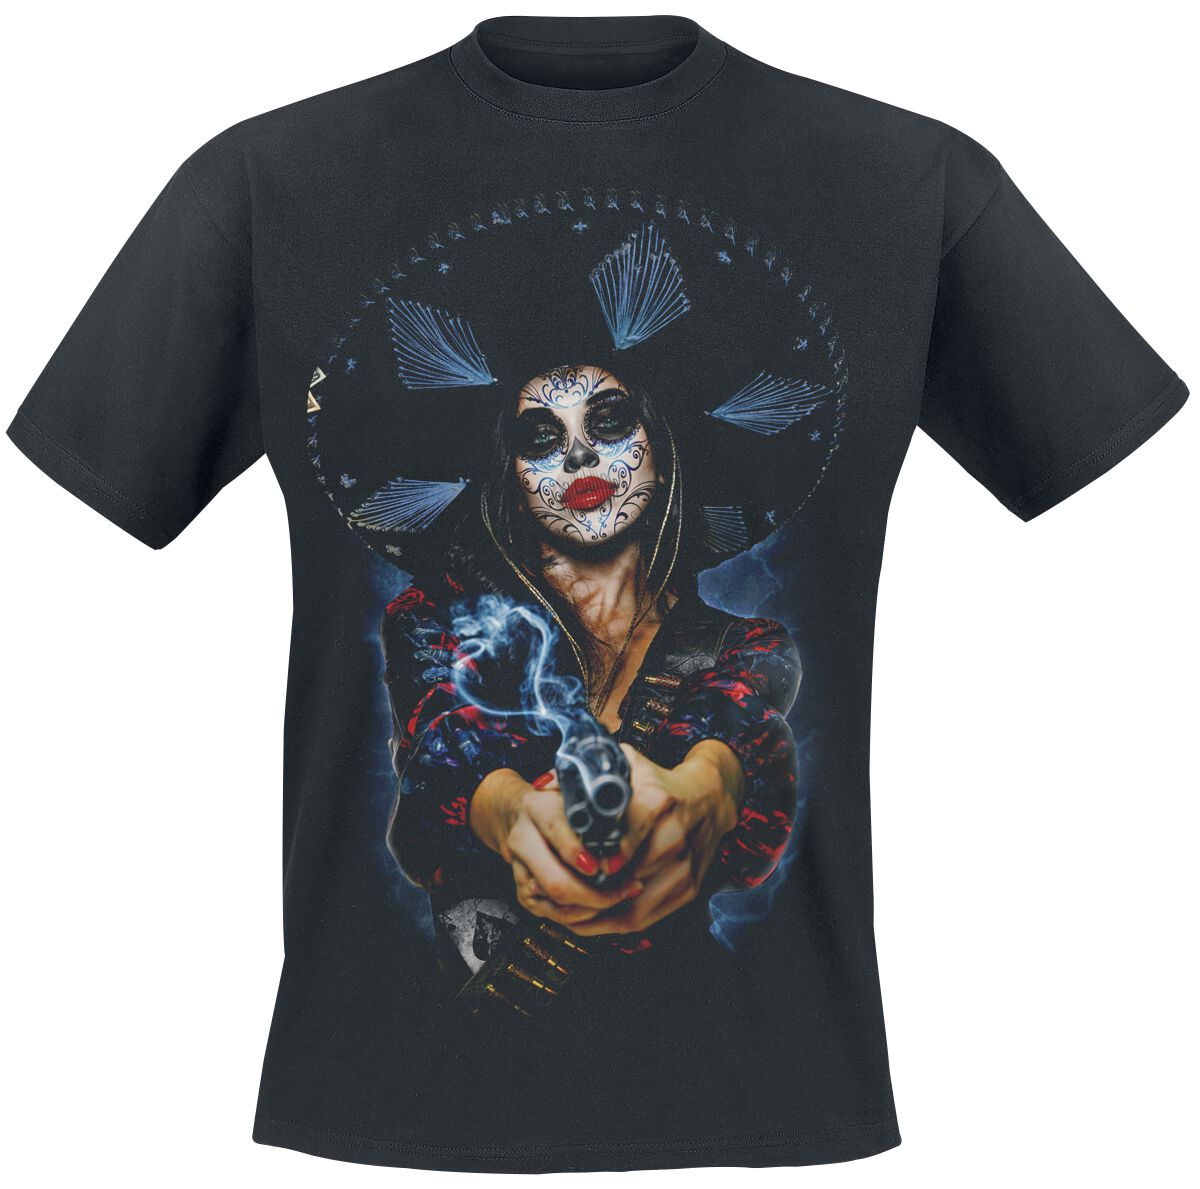 The Offspring T-Shirt - Bad Times - S bis XXL - für Männer - Größe L - schwarz  - Lizenziertes Merchandise!